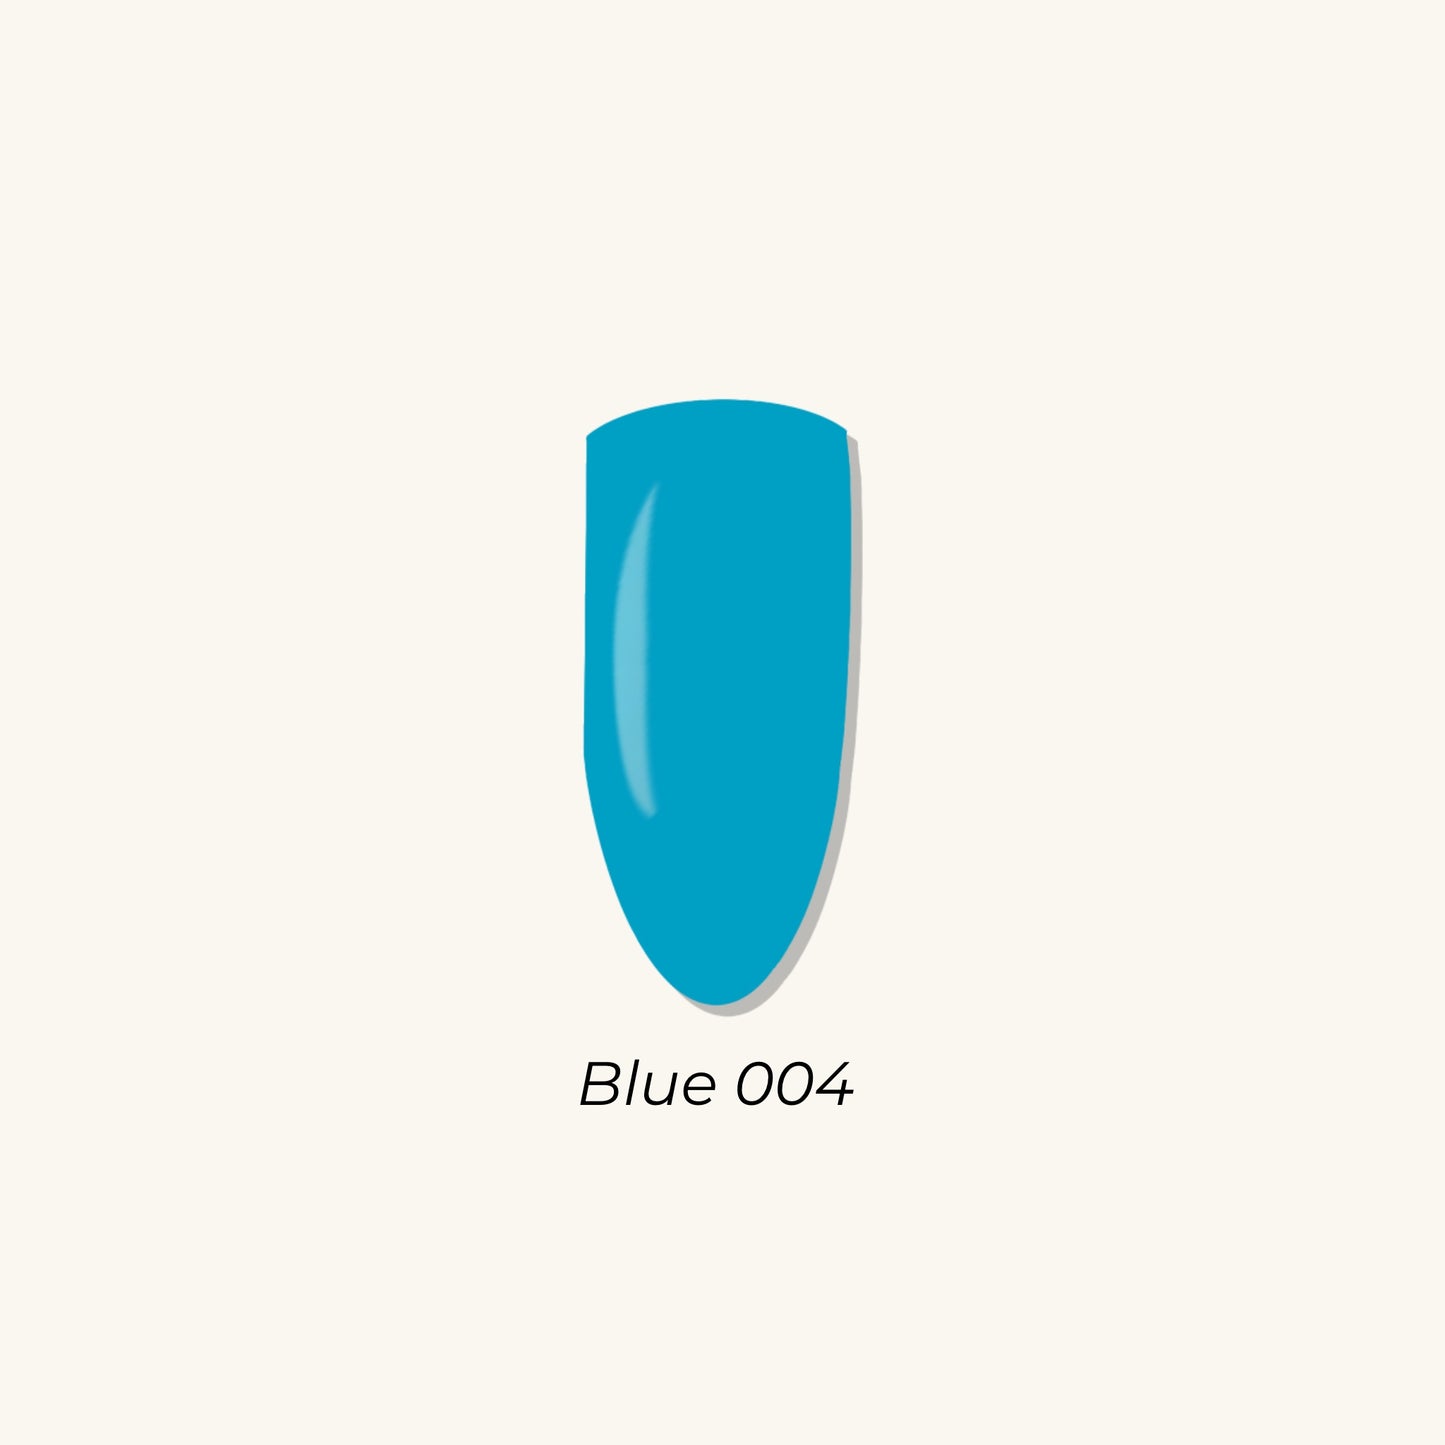 Blue 004